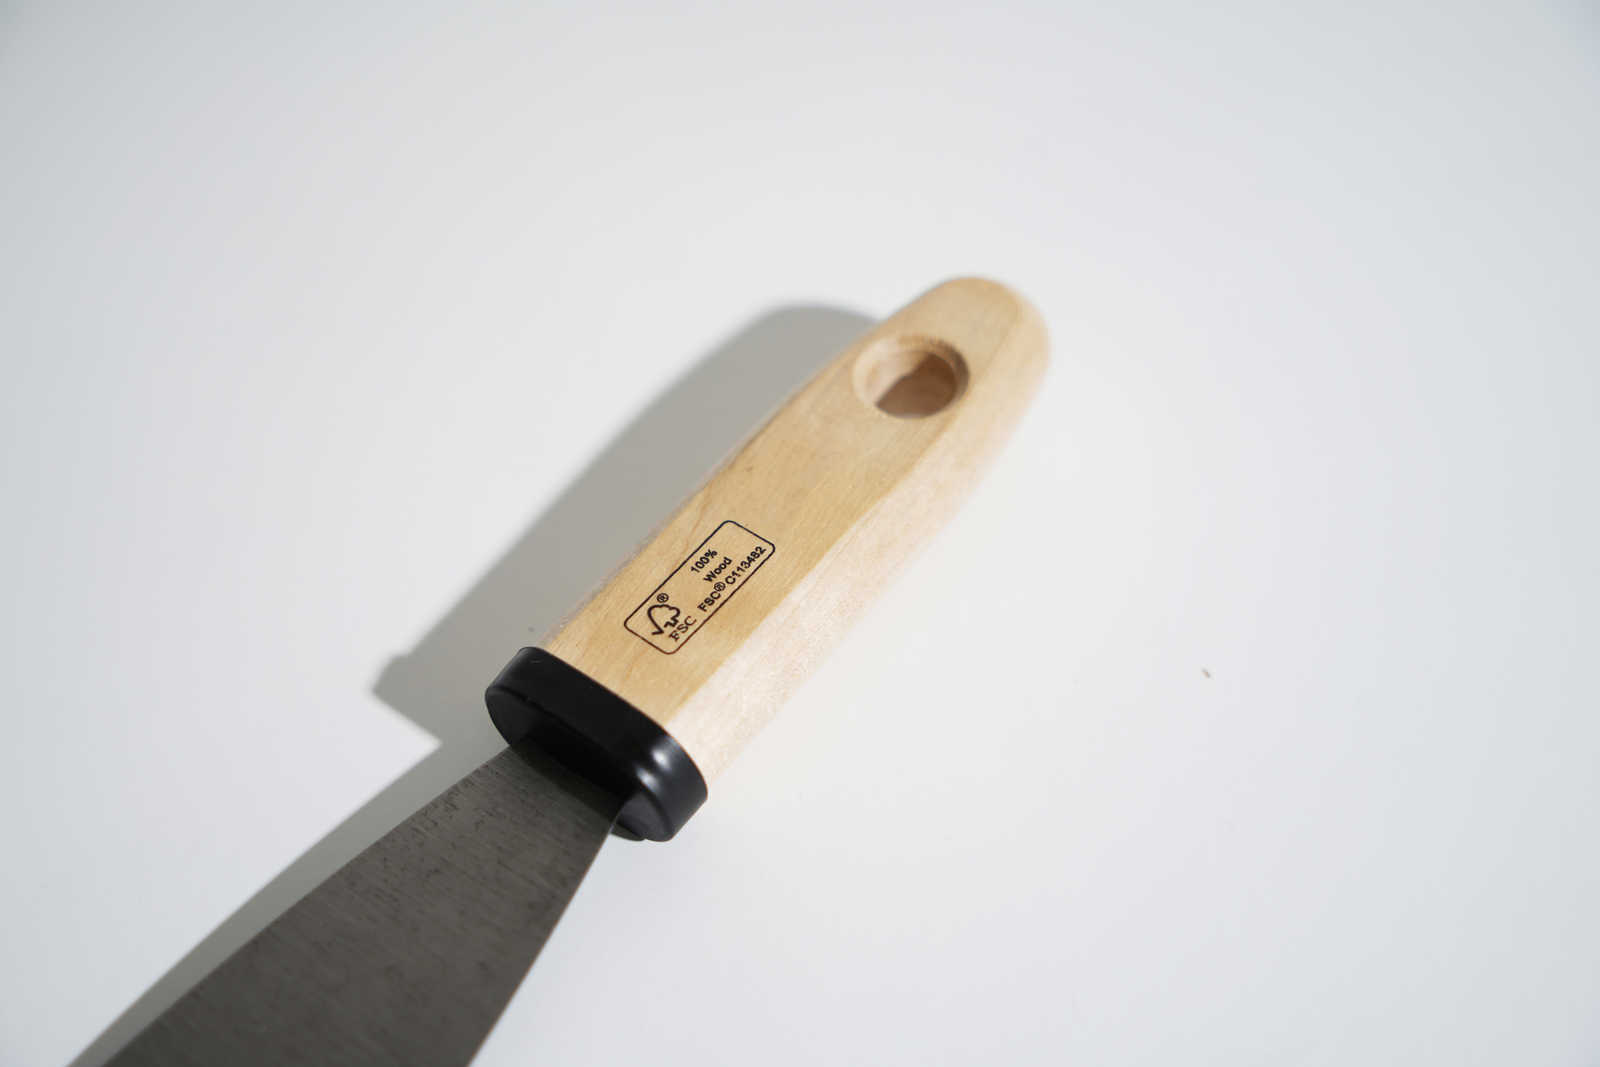             Espátula de pintor de 40 mm con hoja de acero flexible y mango de madera
        